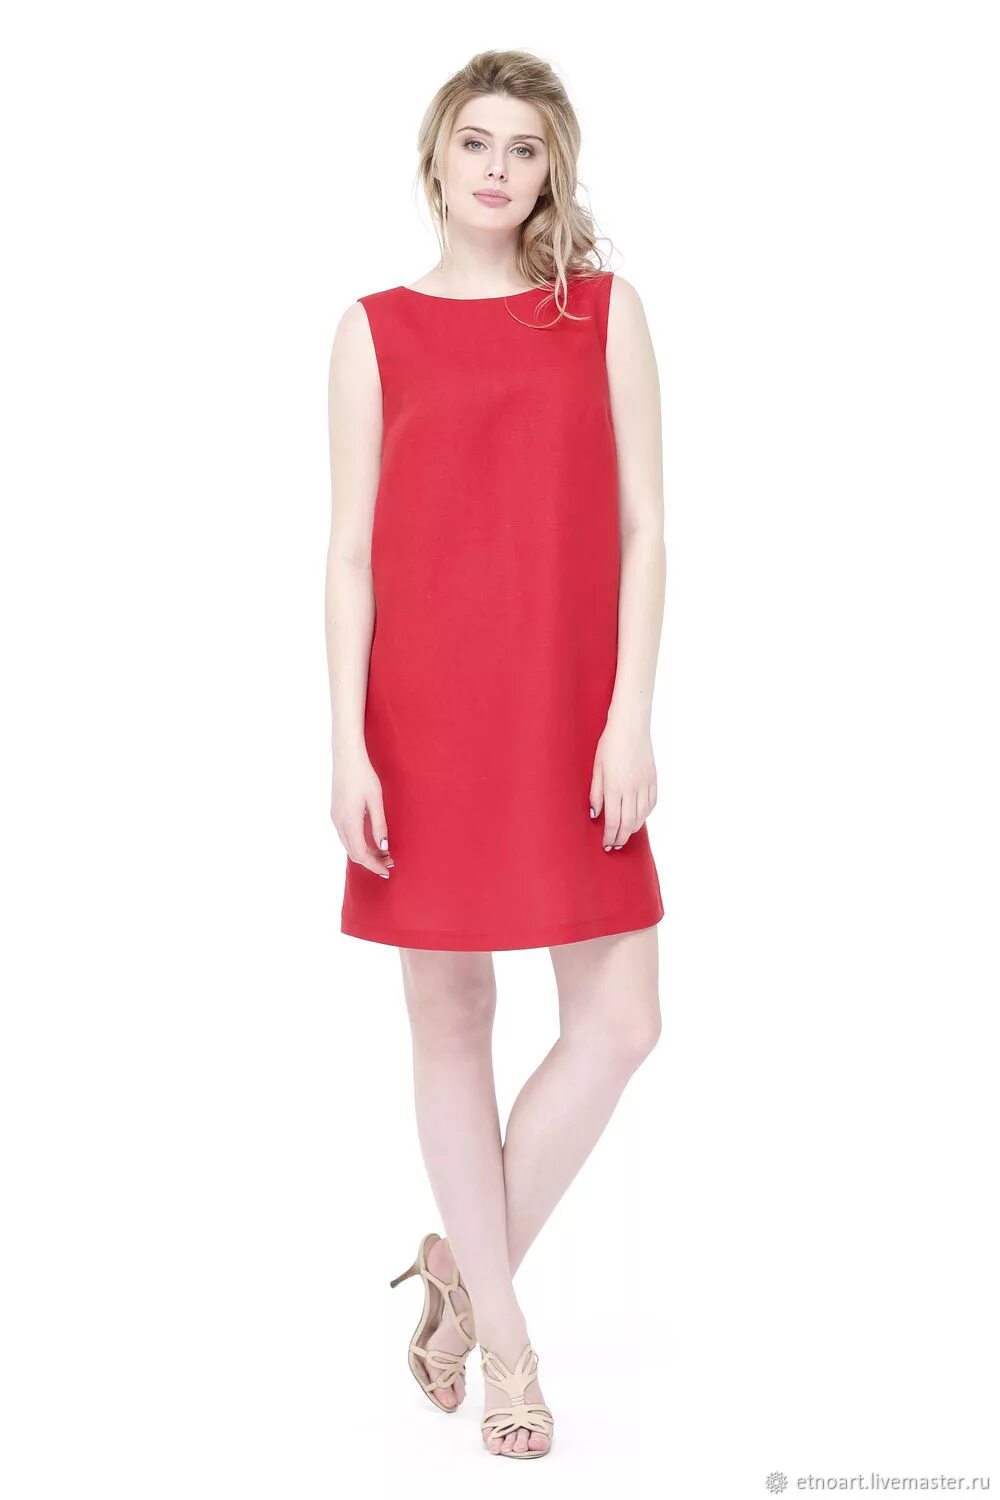 Красное платье лен. Красное платье из льна. Красные платья летний лен. Вишневое льняное платье.